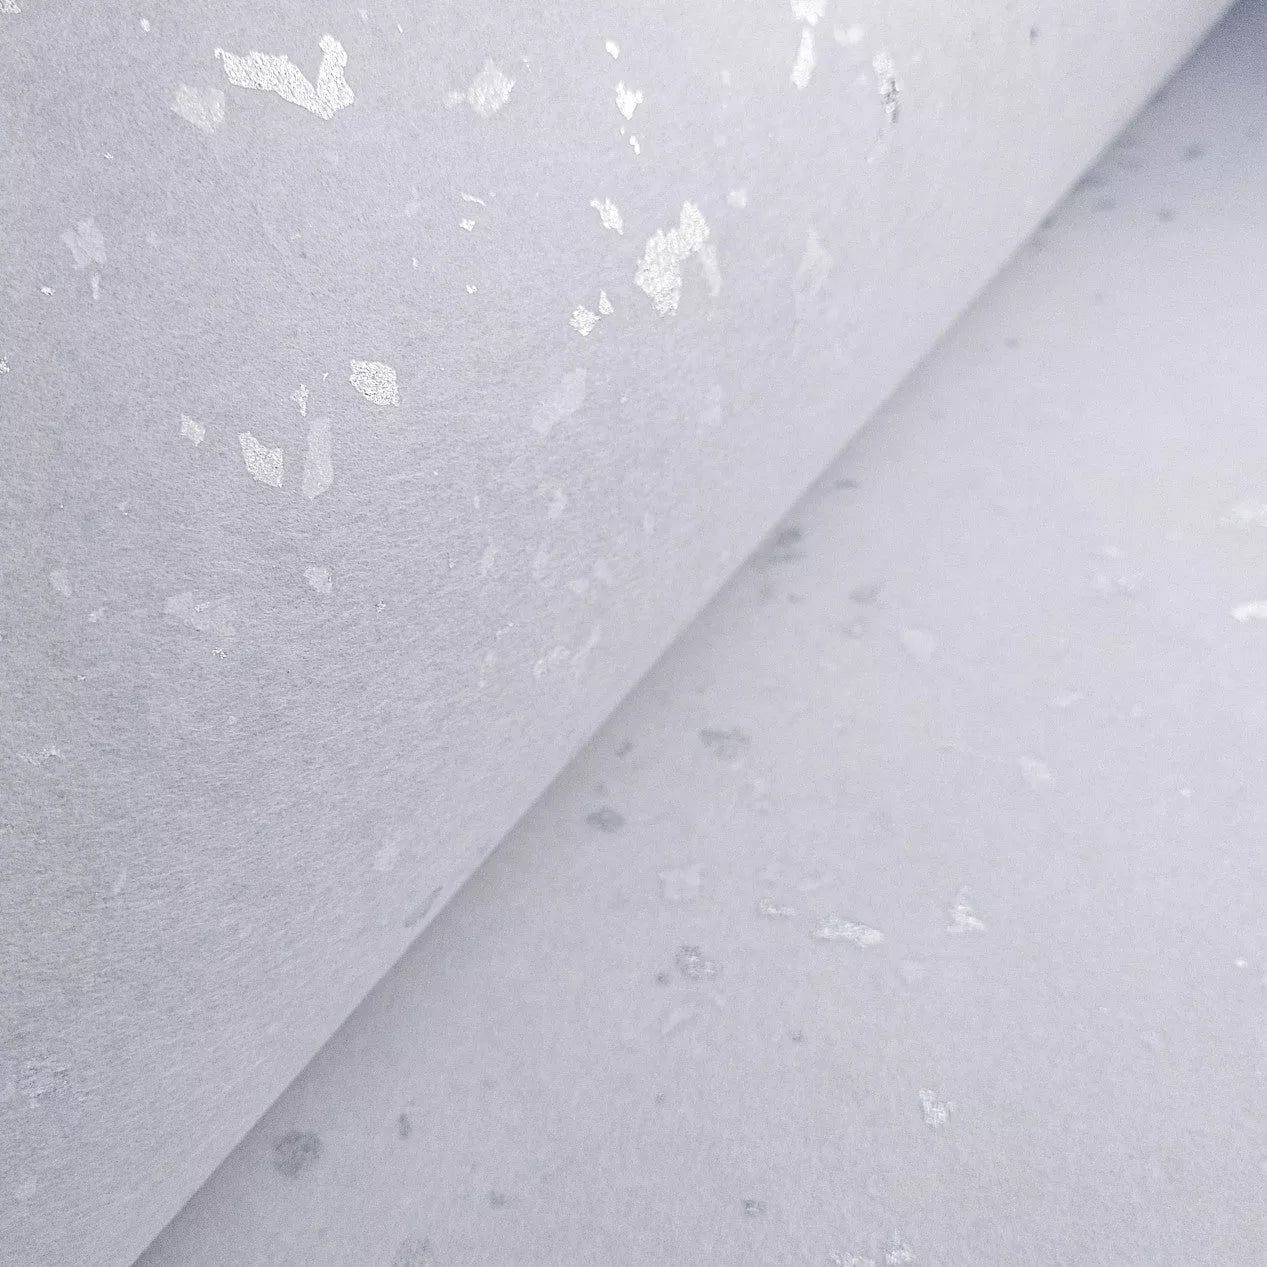 Silver Flake White Kozo Paper